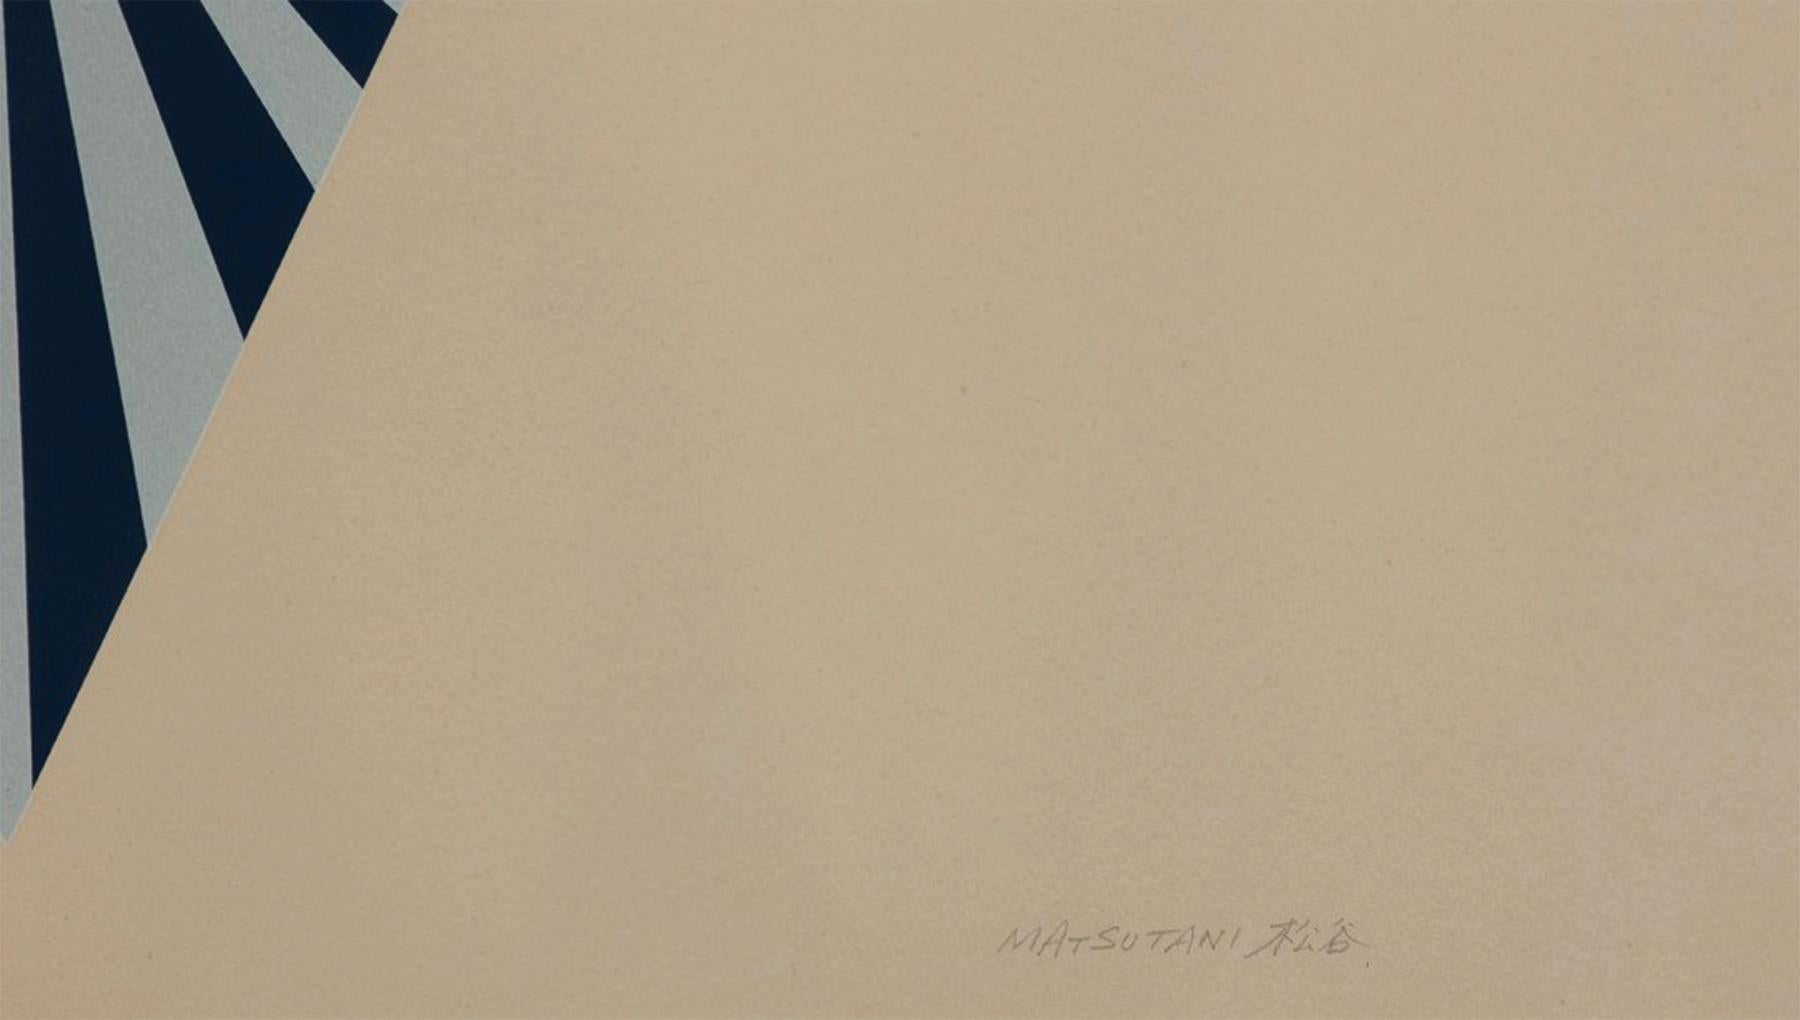 Takesada Matsutani (Japaner, geb. 1937)
Ausbreitung-L, 1971
Siebdruck in Farben
Ausgabe 51/75 
28 x 27 Zoll
28,25 x 27,25 Zoll, gerahmt

Takesada Matsutani ist ein japanischer Avantgarde-Künstler, der in Paris und Nishinomiya lebt. Matsutani, der